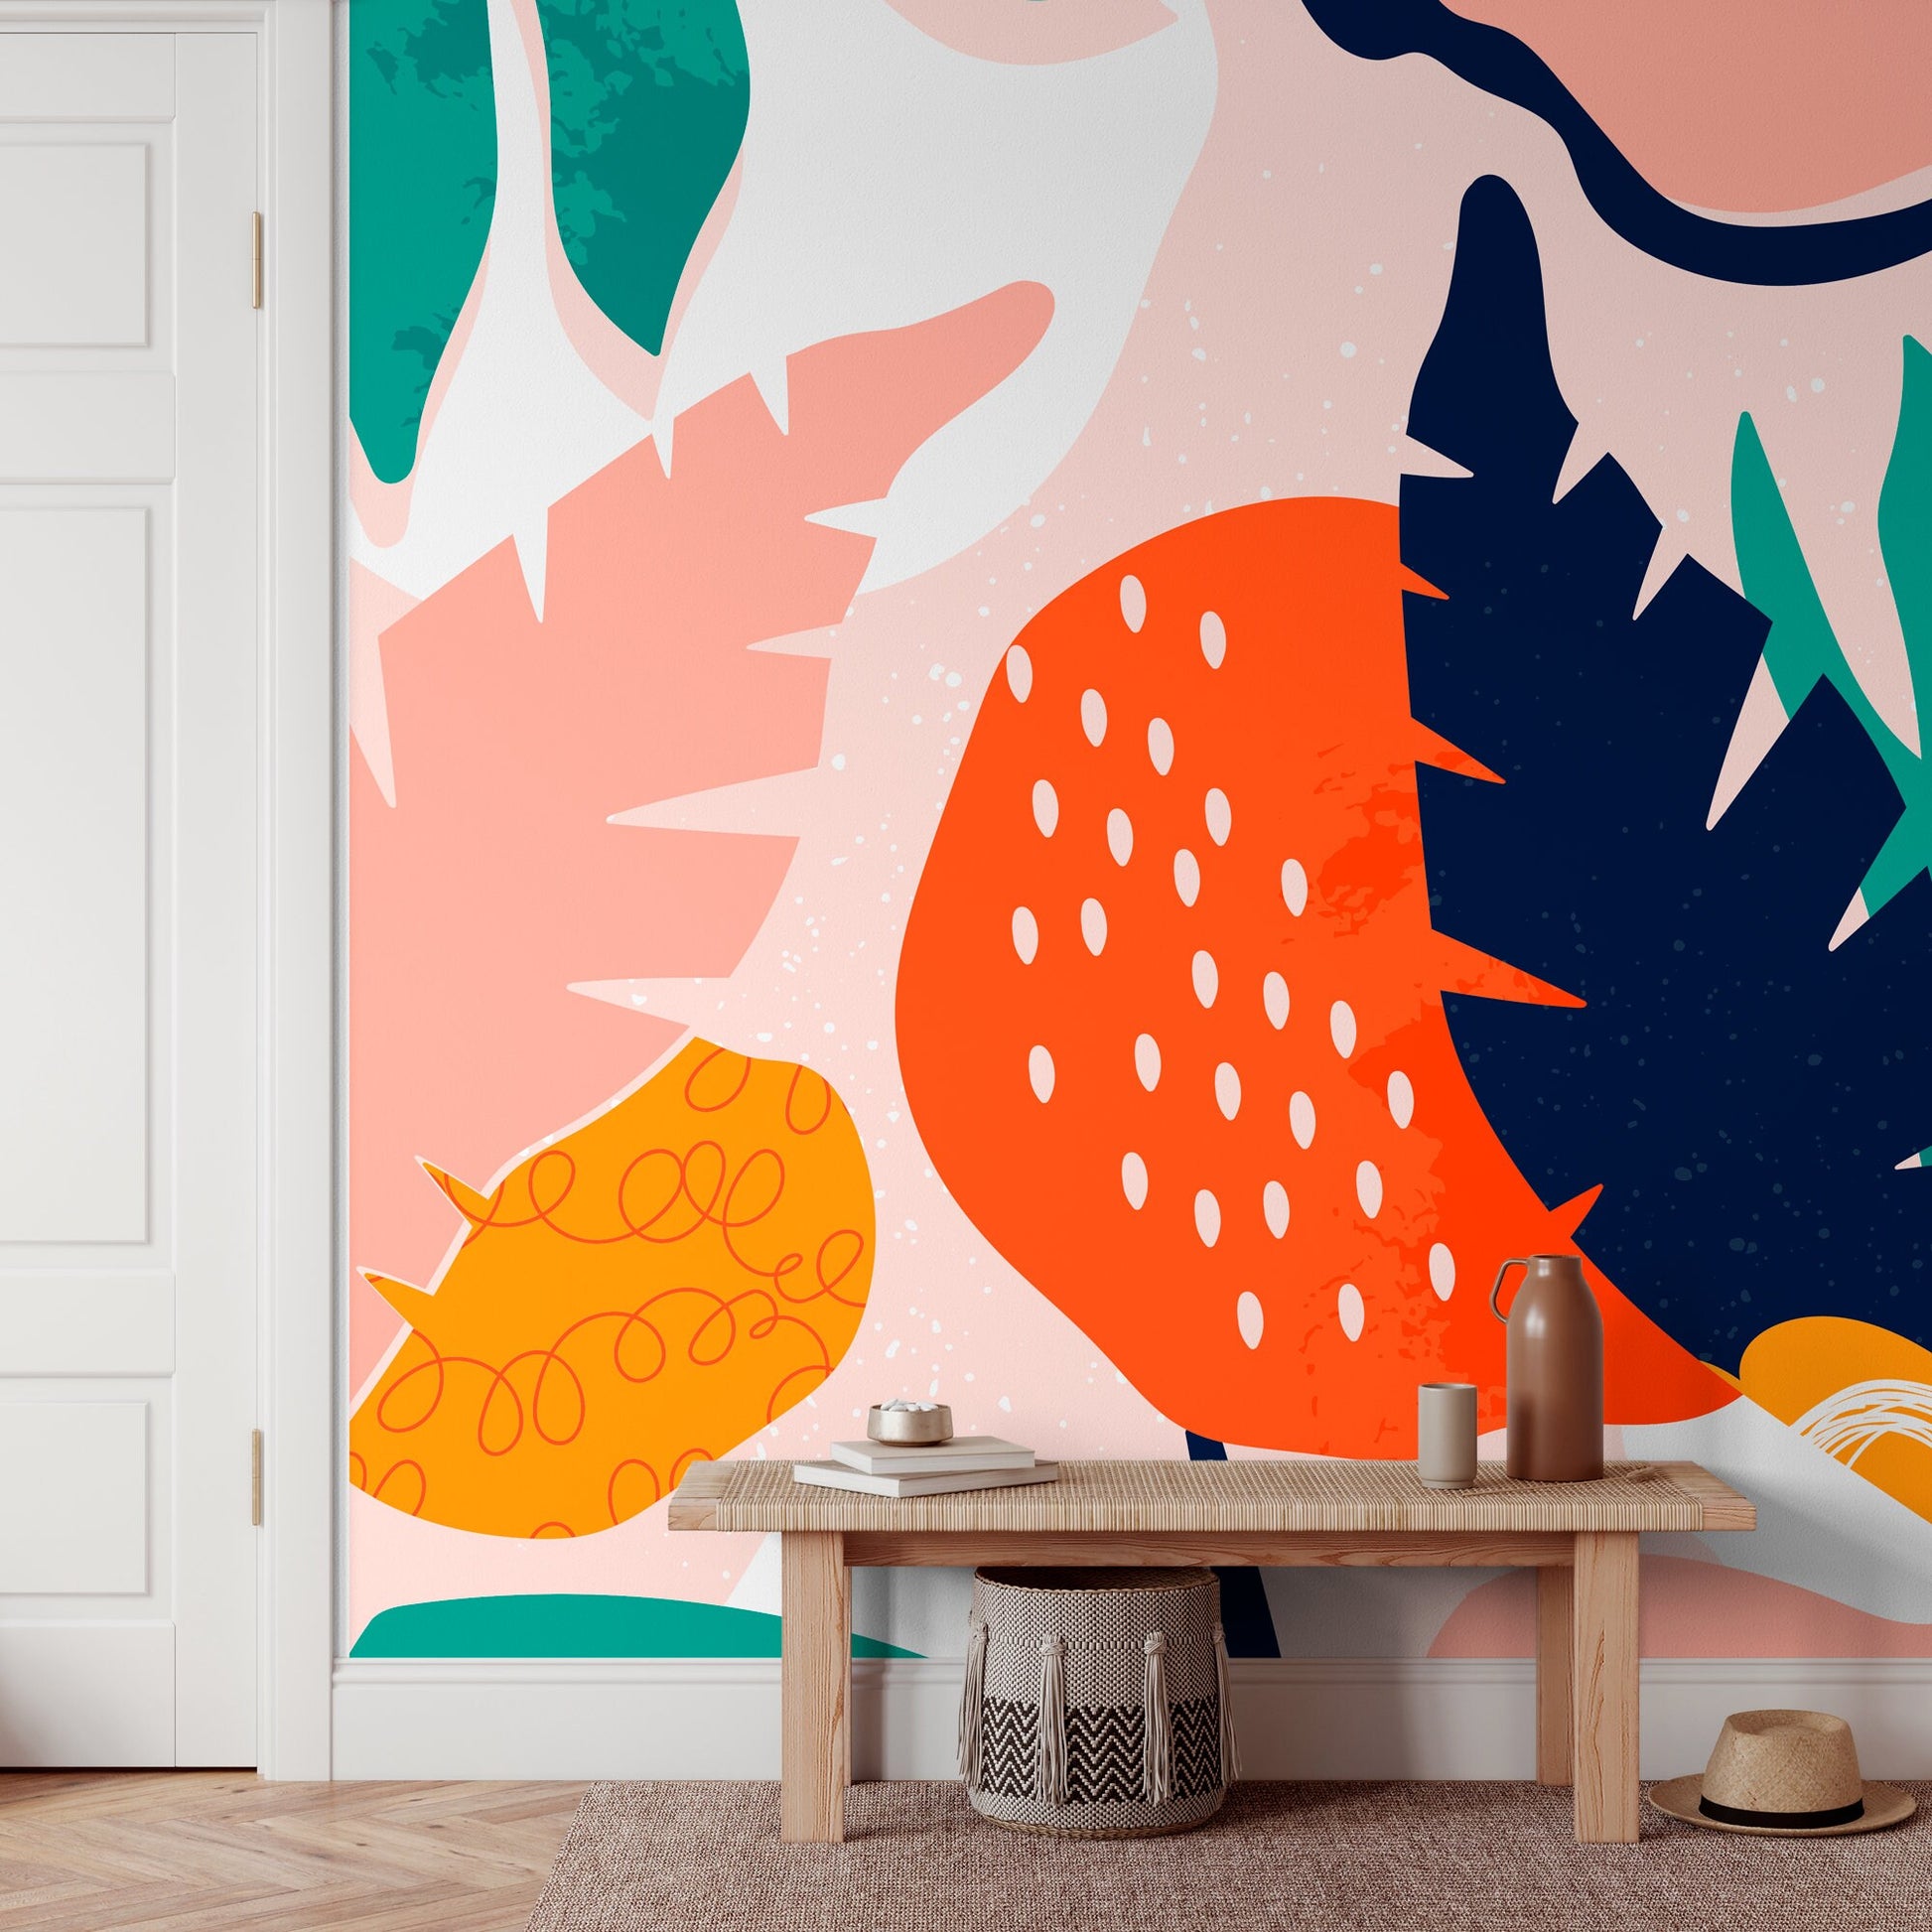 Monstera Wallpaper, Wallpaper, Self-Adhesive, Removable Wallpaper, Leaf Wallpaper, Mural Wallpaper - B533